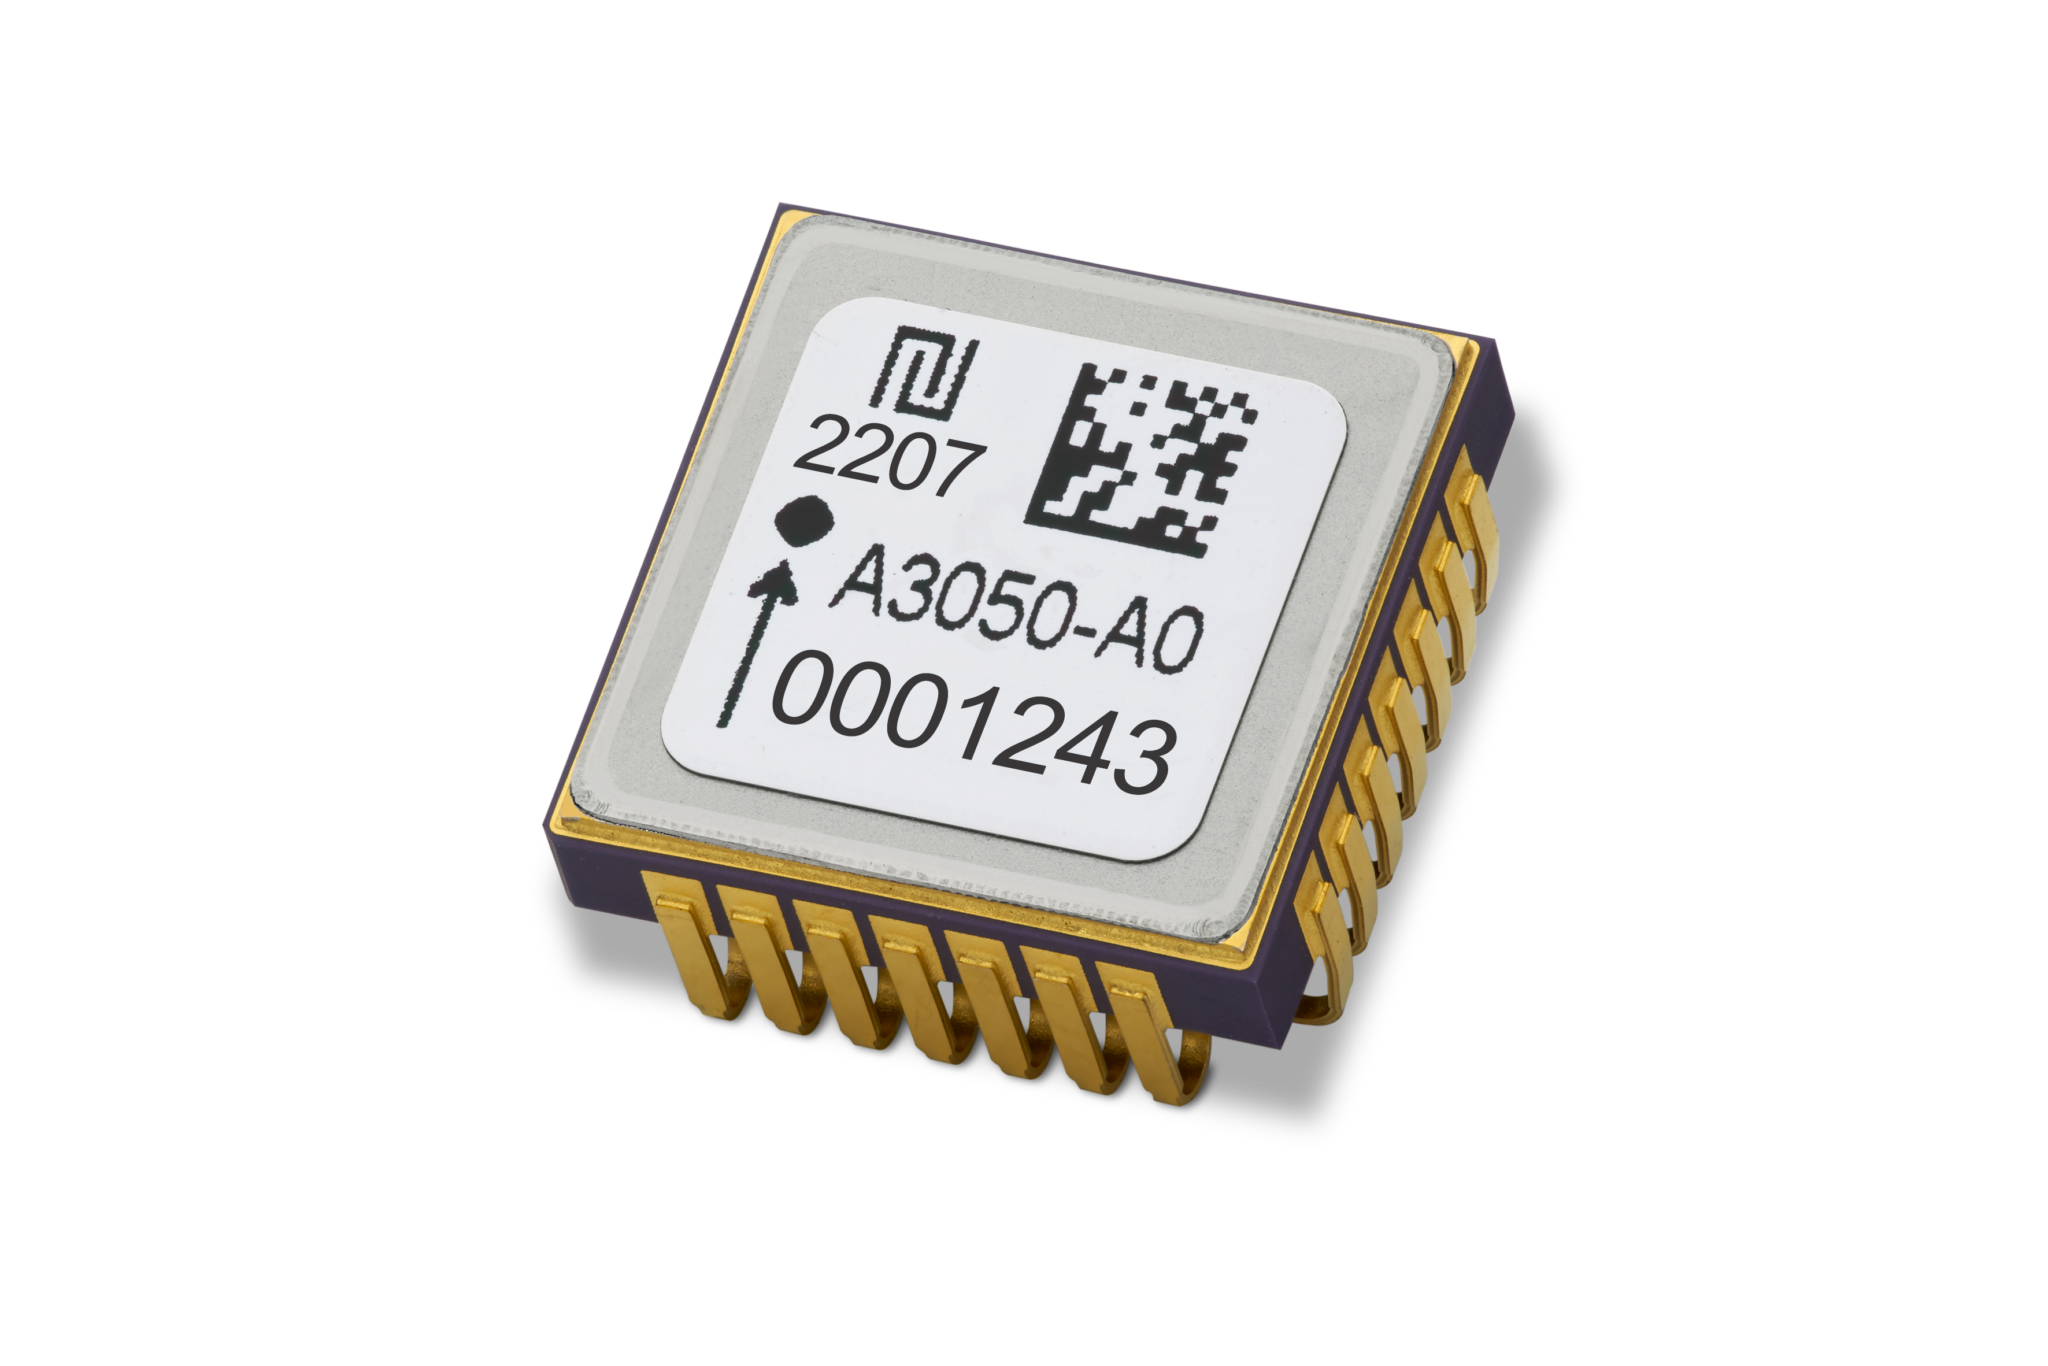 2 High performance 5 g MEMS accelerometer AXO305 2048x1366